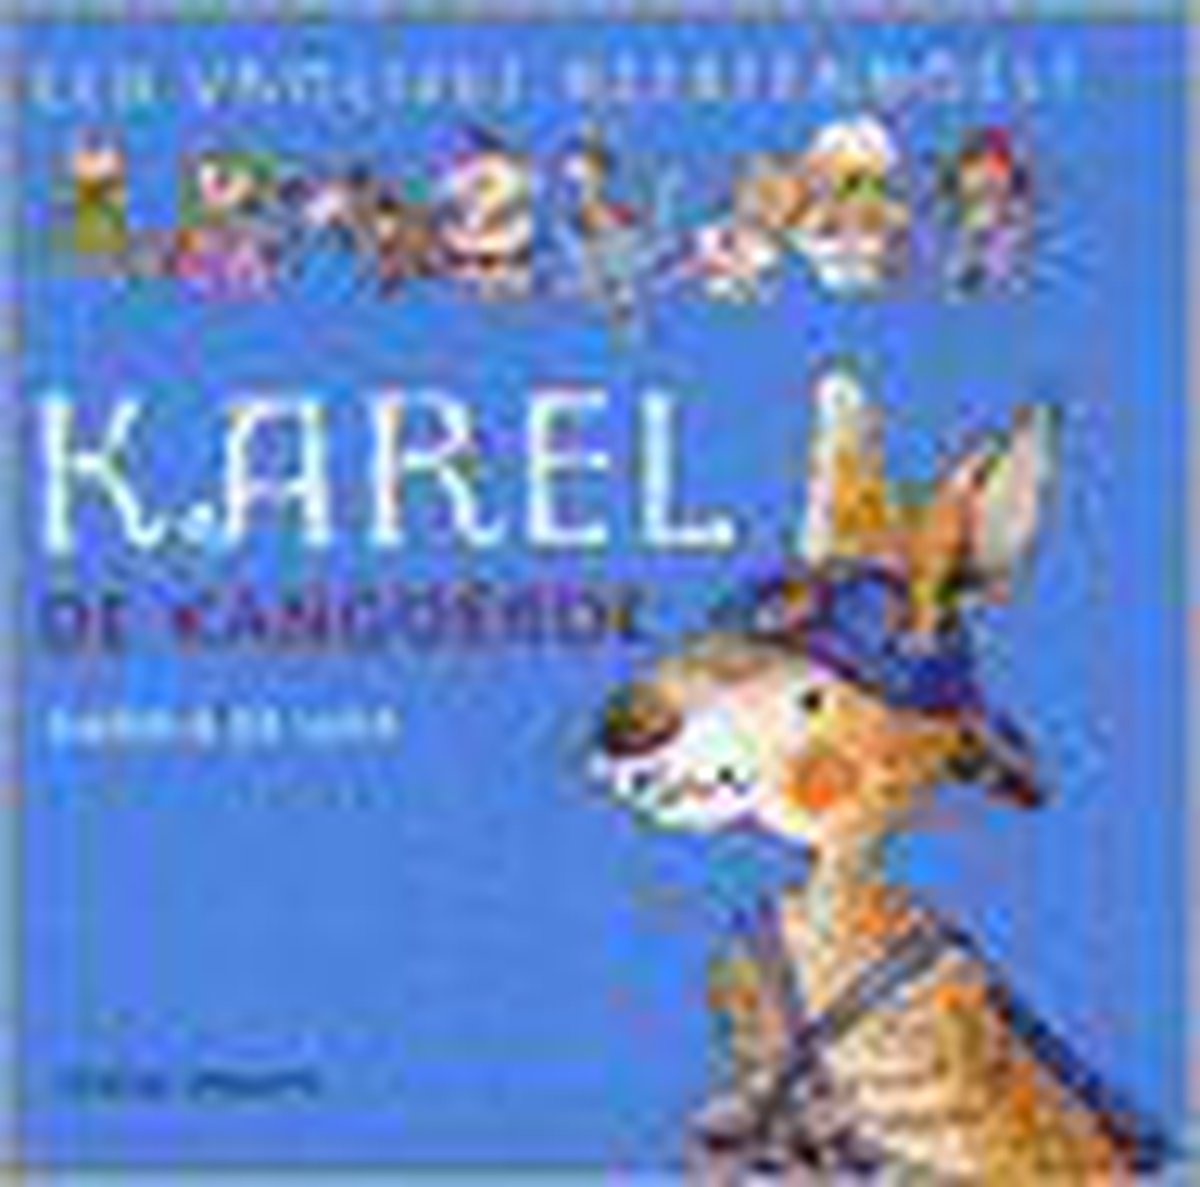 Karel de kangoeroe / Een vrolijke beestenboel!